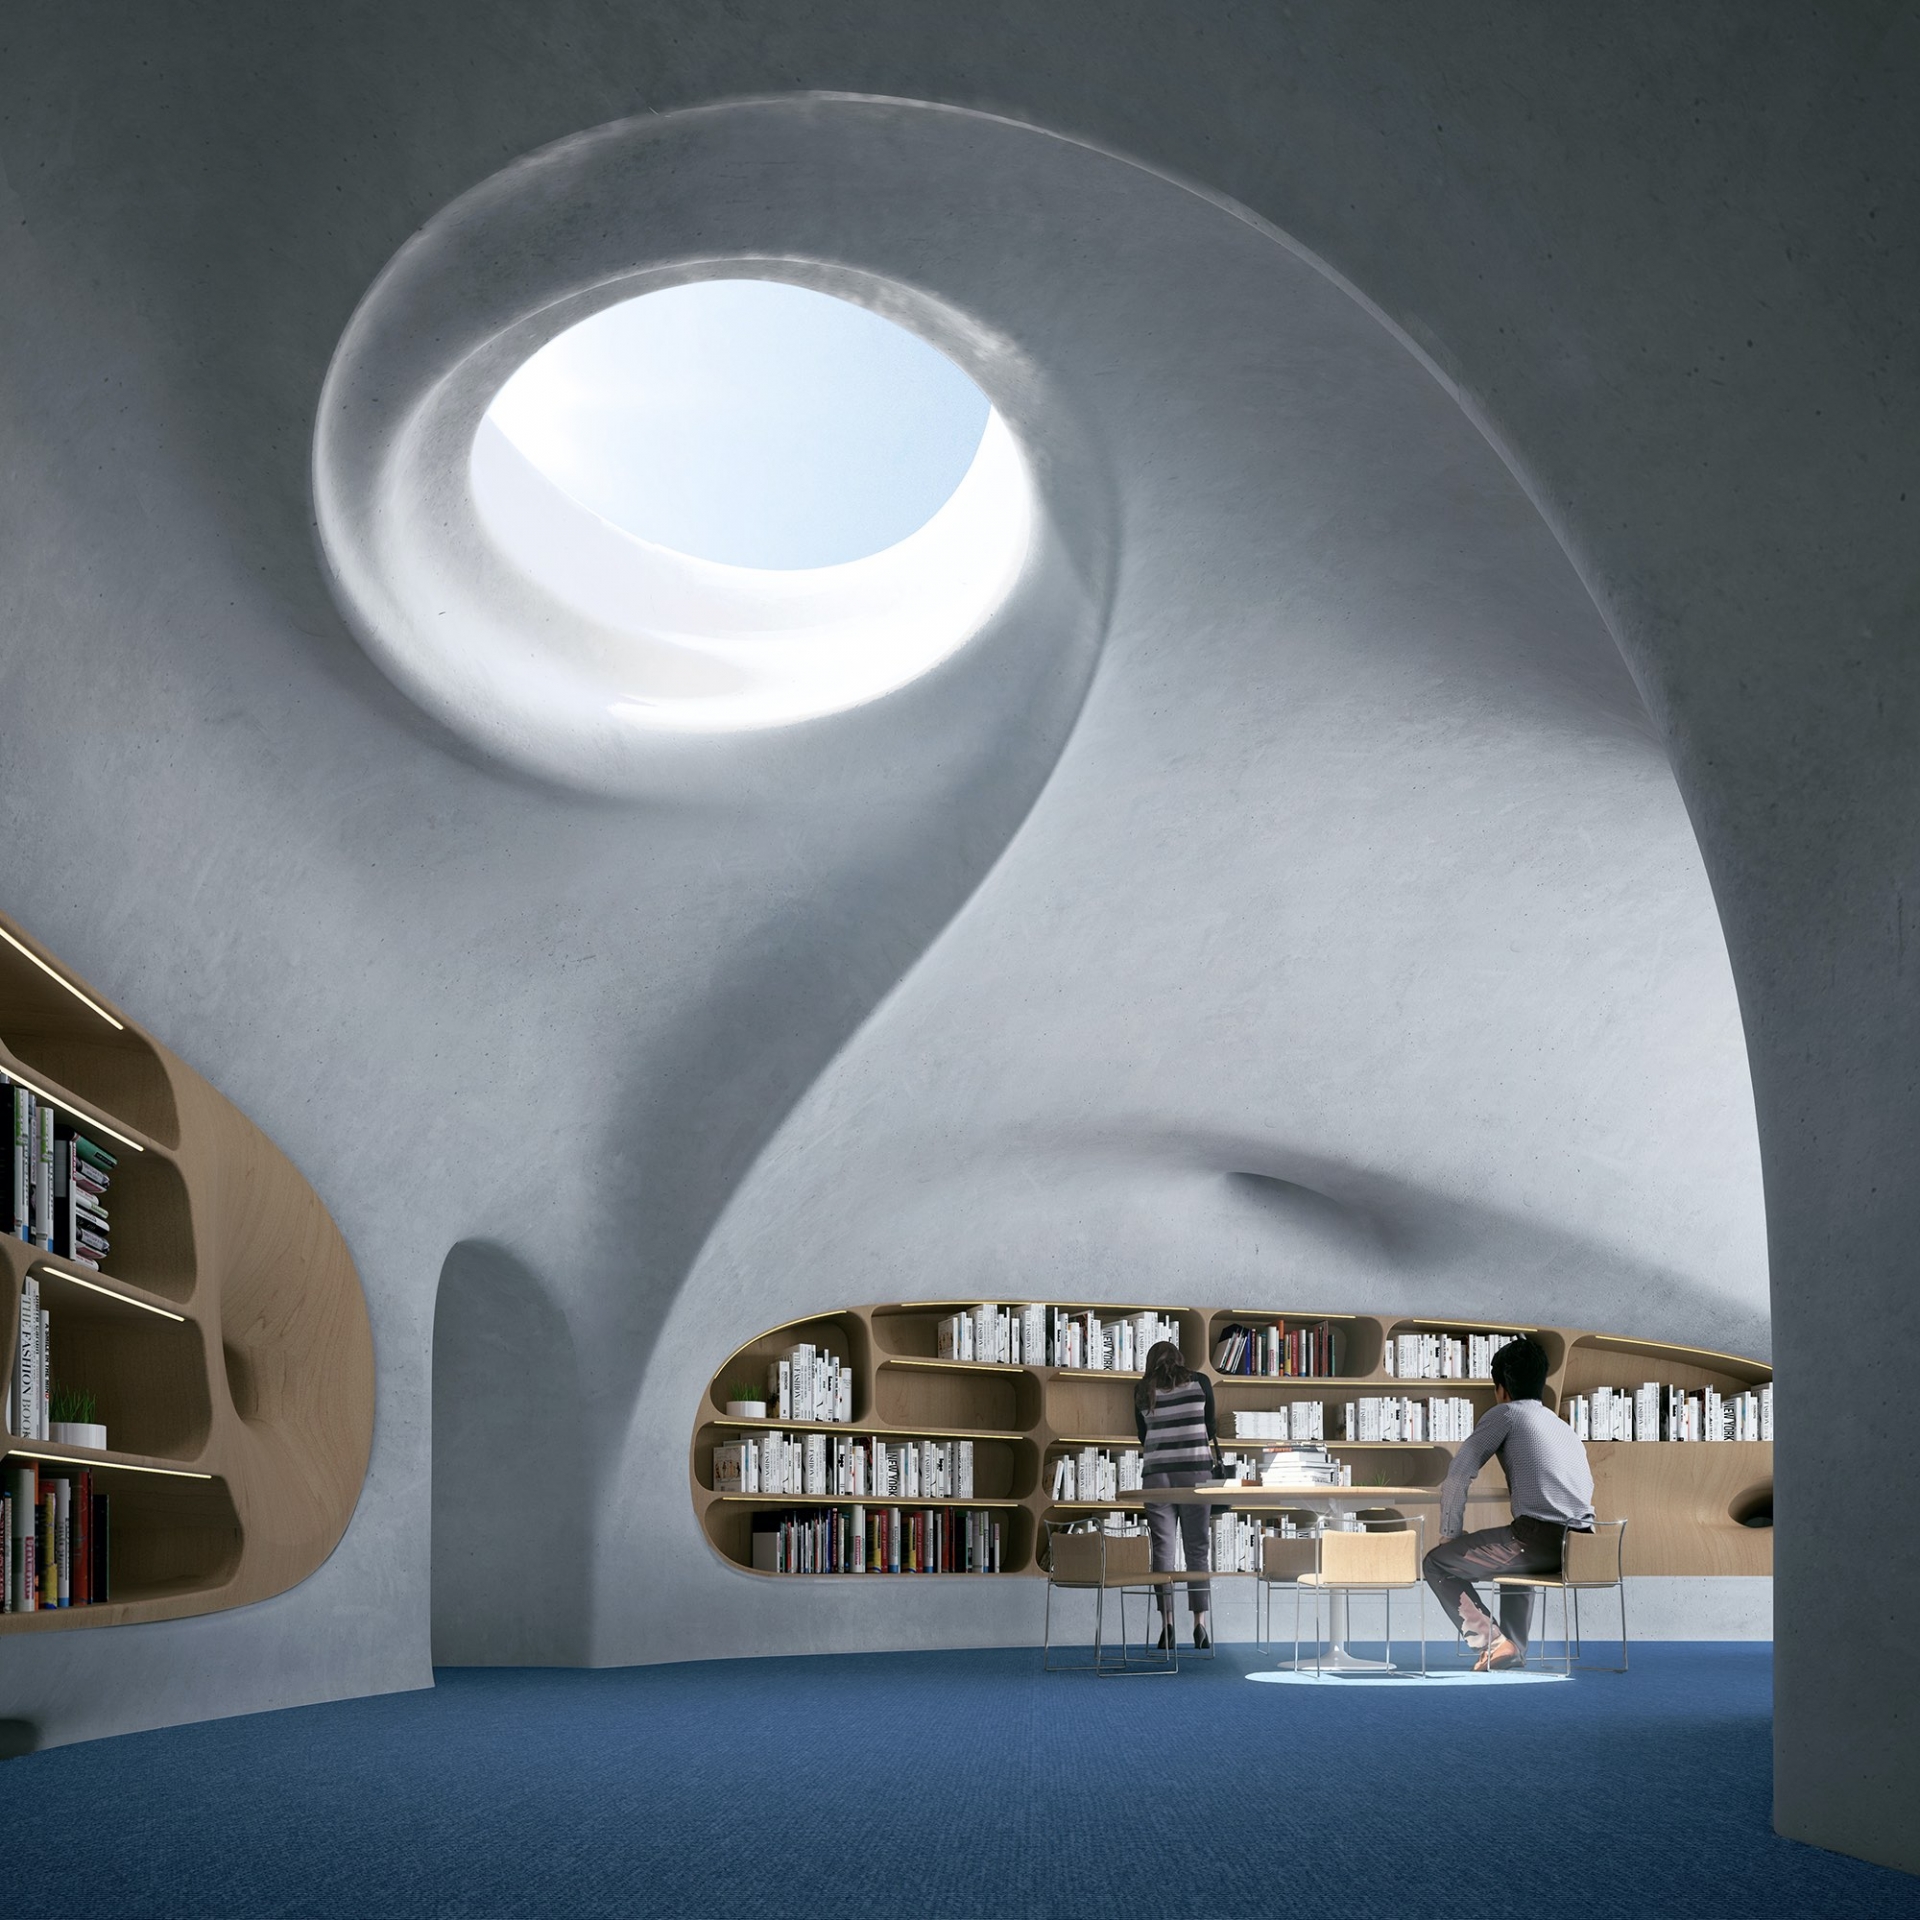 Thư viện Wormhole, công trình kiến trúc gợi nhớ về “lỗ hổng vượt thời gian” - Ảnh 9